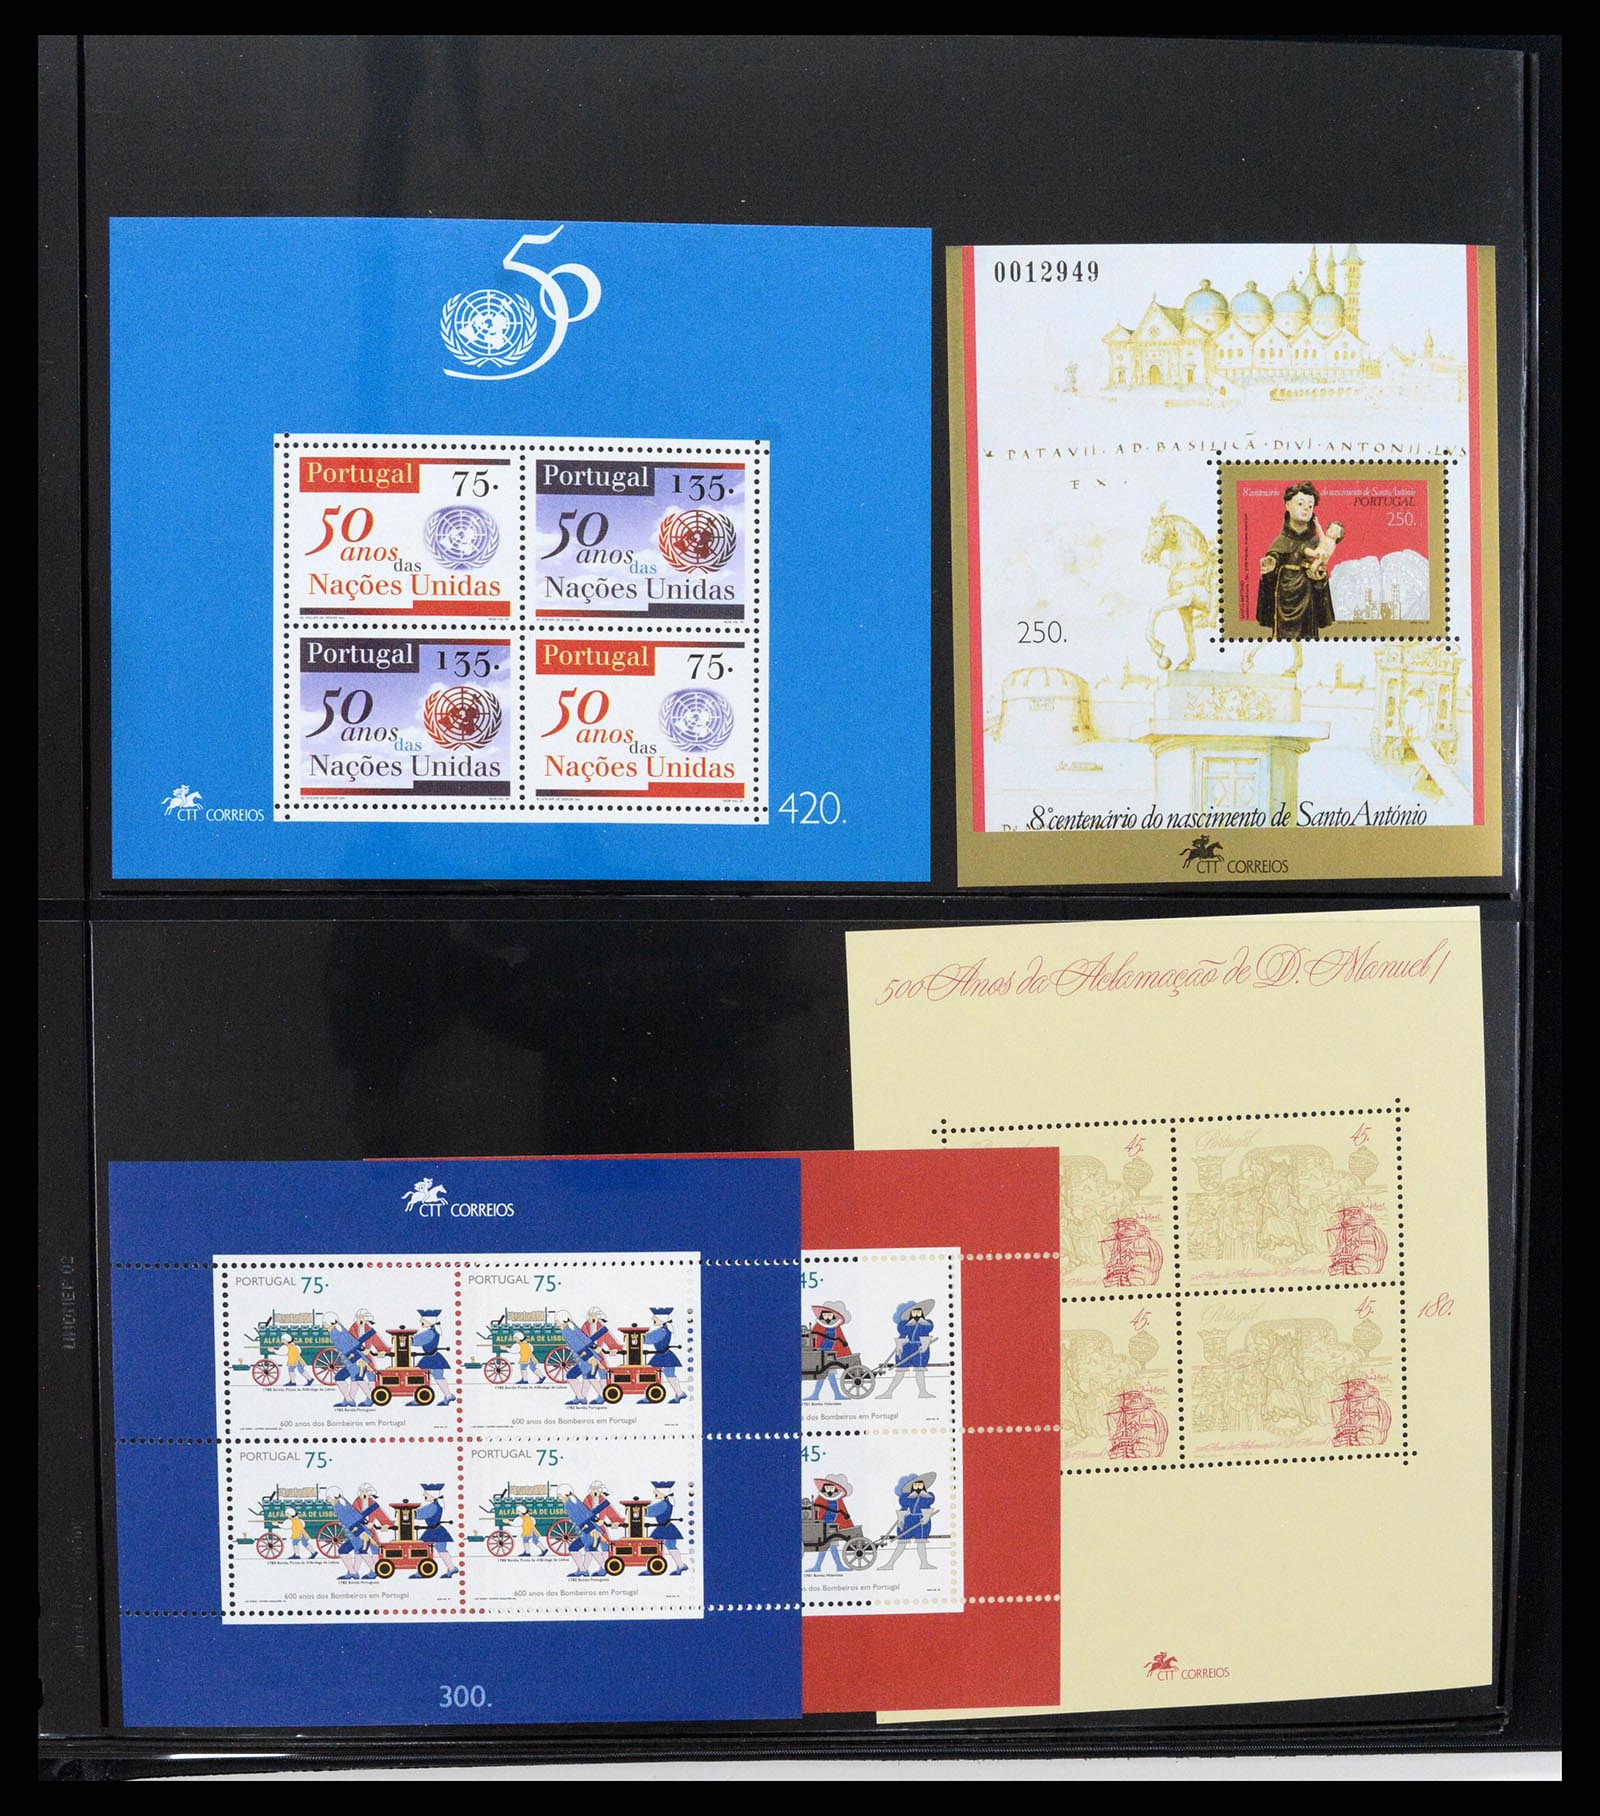 37345 342 - Stamp collection 37345 European countries souvenir sheets.